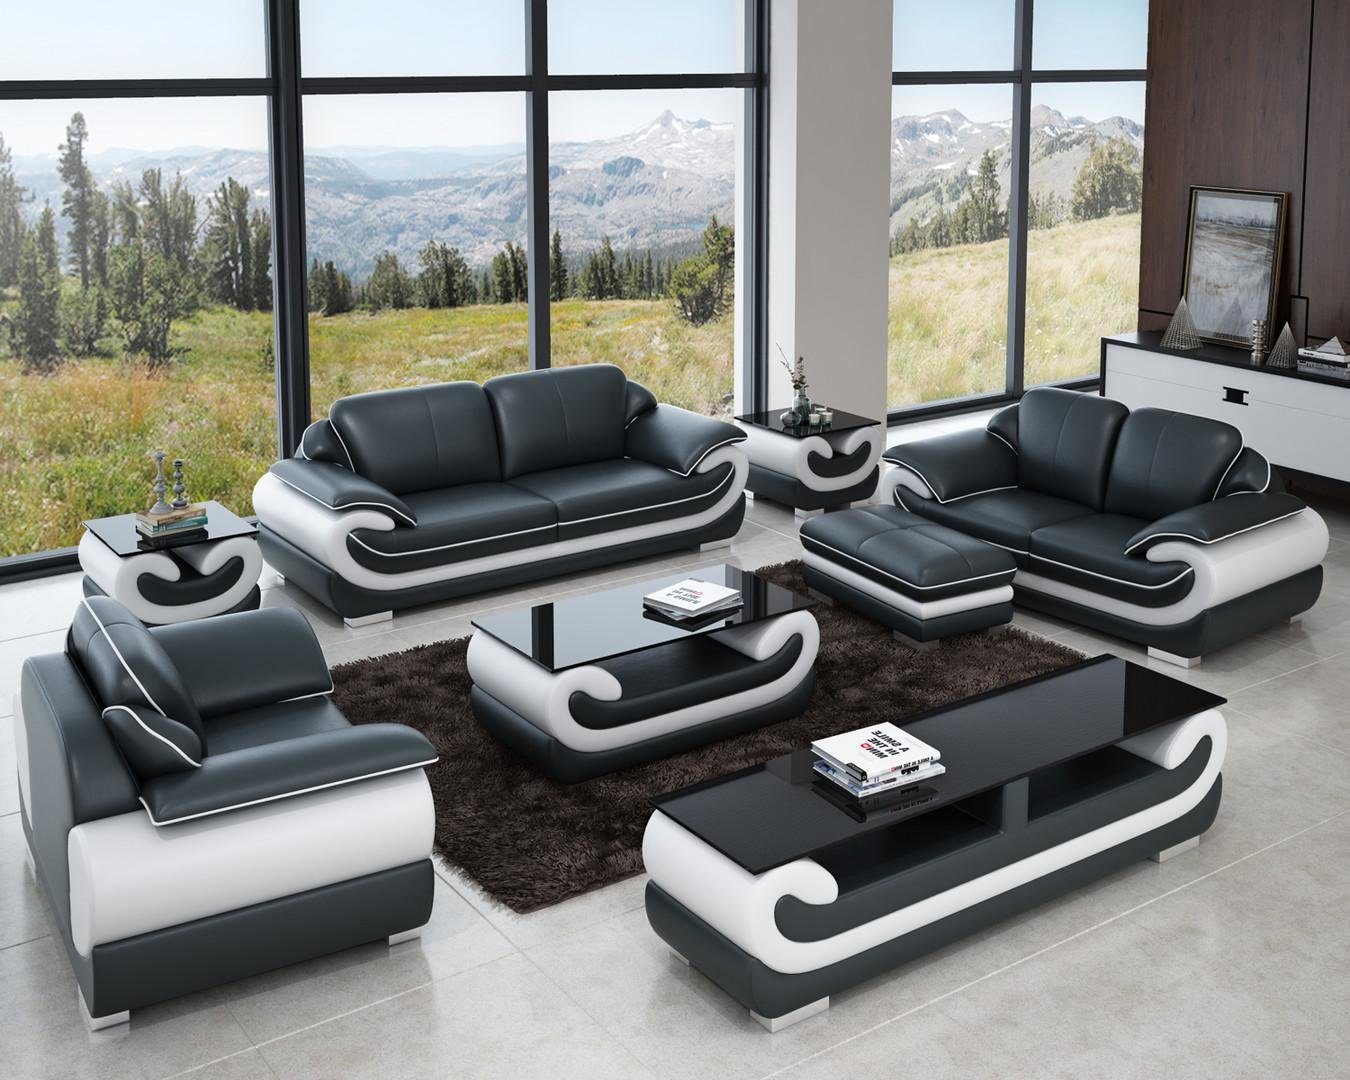 JVmoebel Sofa Ledersofa Couch Wohnlandschaft 3+1+1 Sitzer Garnitur Design, Made in Europe Grau/Weiß